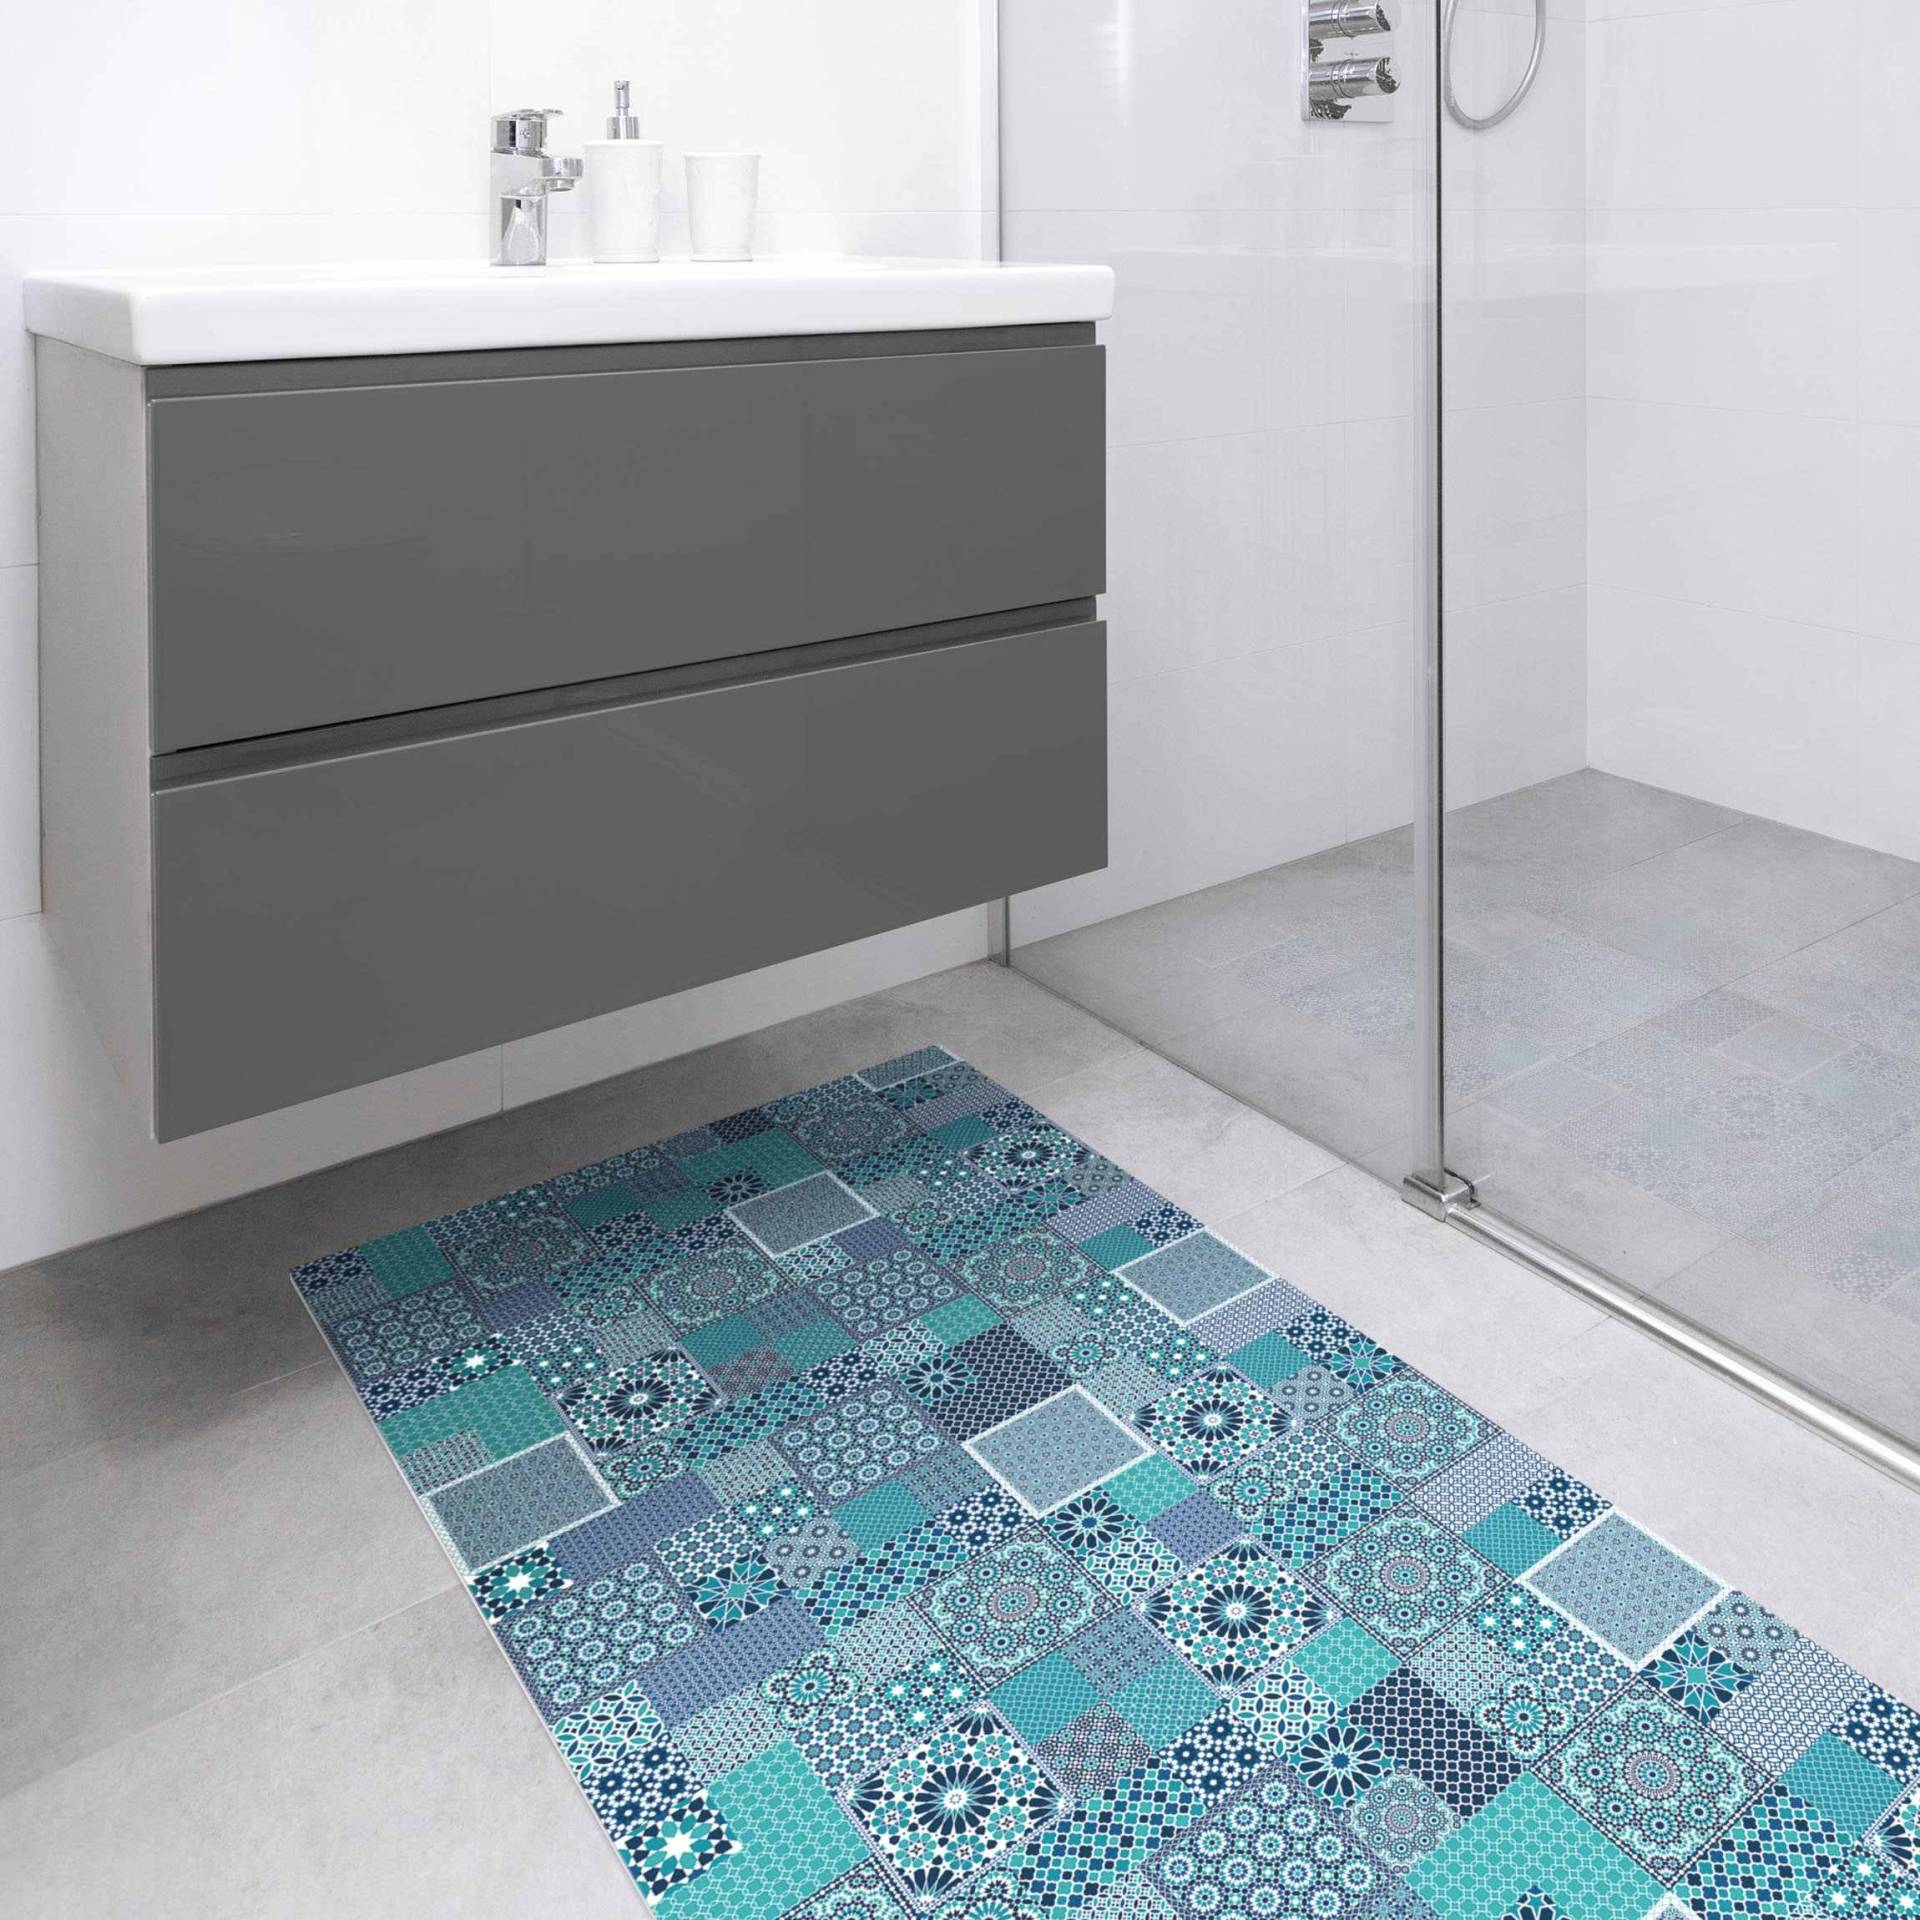 Vinyl-Teppich Marokkanische Mosaikfliesen türkis blau von Klebefieber